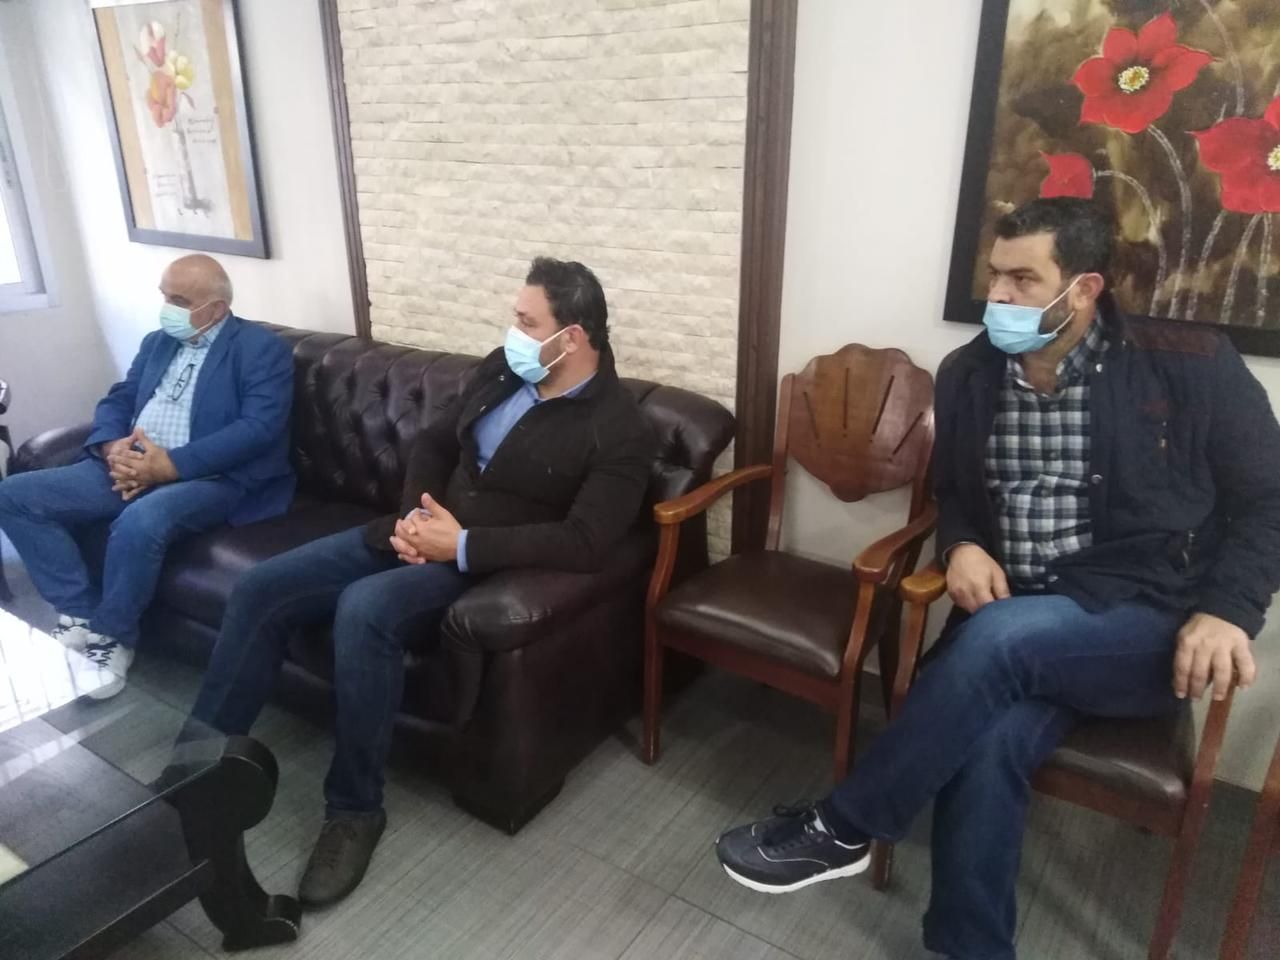 عز الدين تزور مستشفى جبل عامل للاطلاع  على التحضيرات لبدء حملة التلقيح في منطقة صور  وتعتبر اللقاح ضرورة وليس خيار